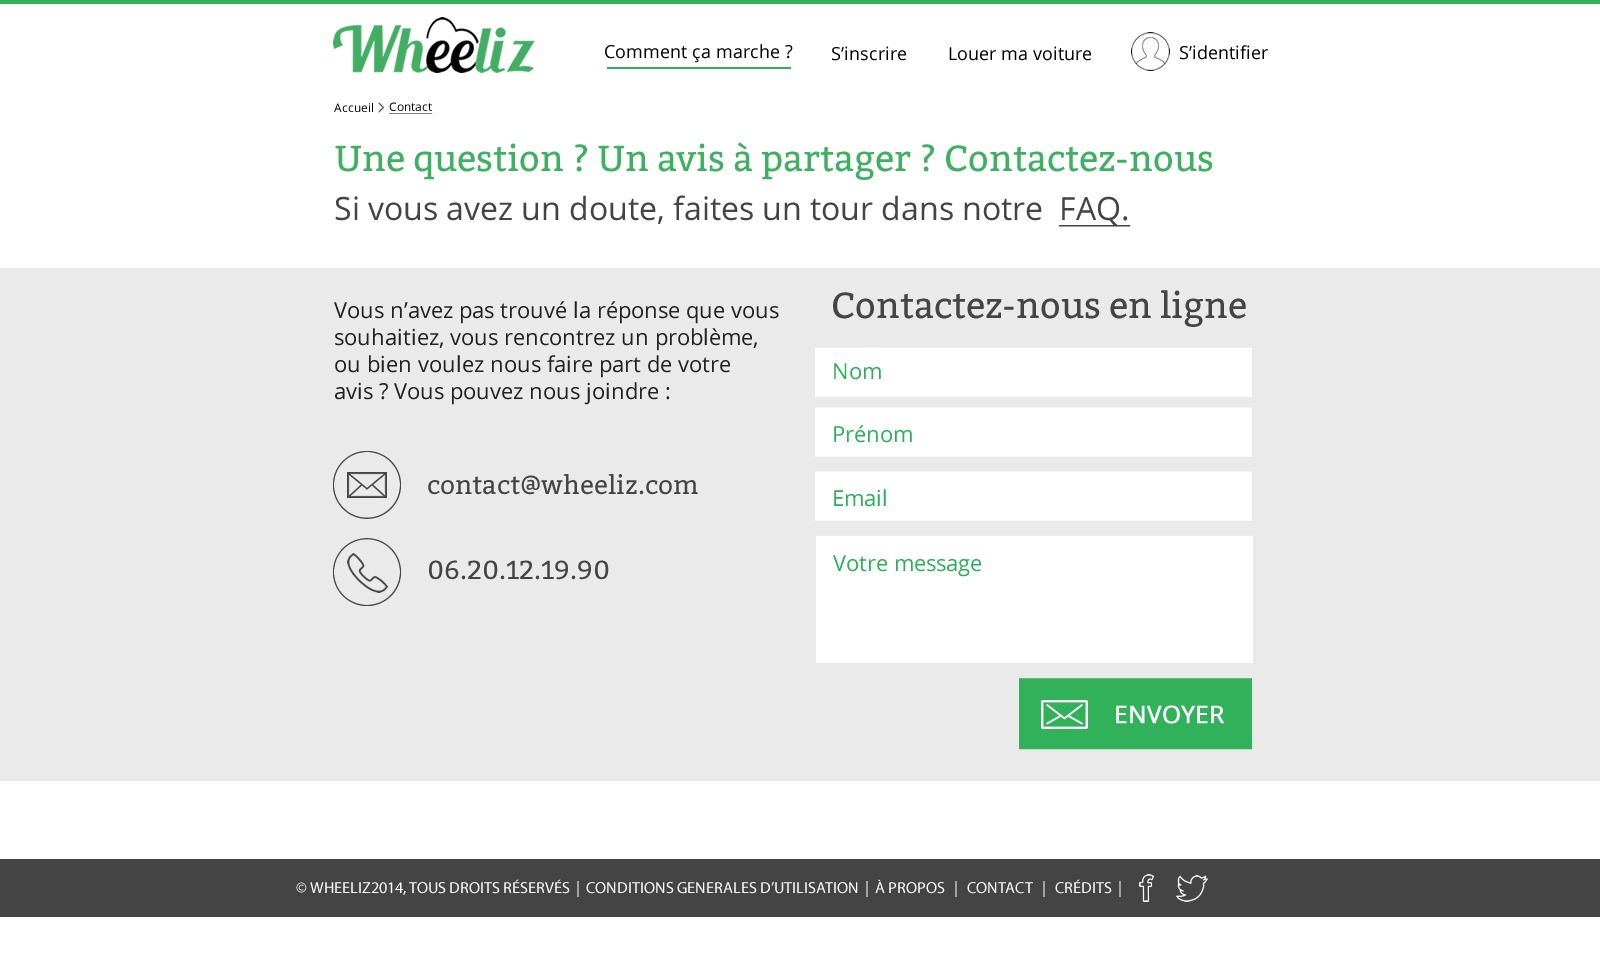 11 Wheeliz Website Contact Page V3.2